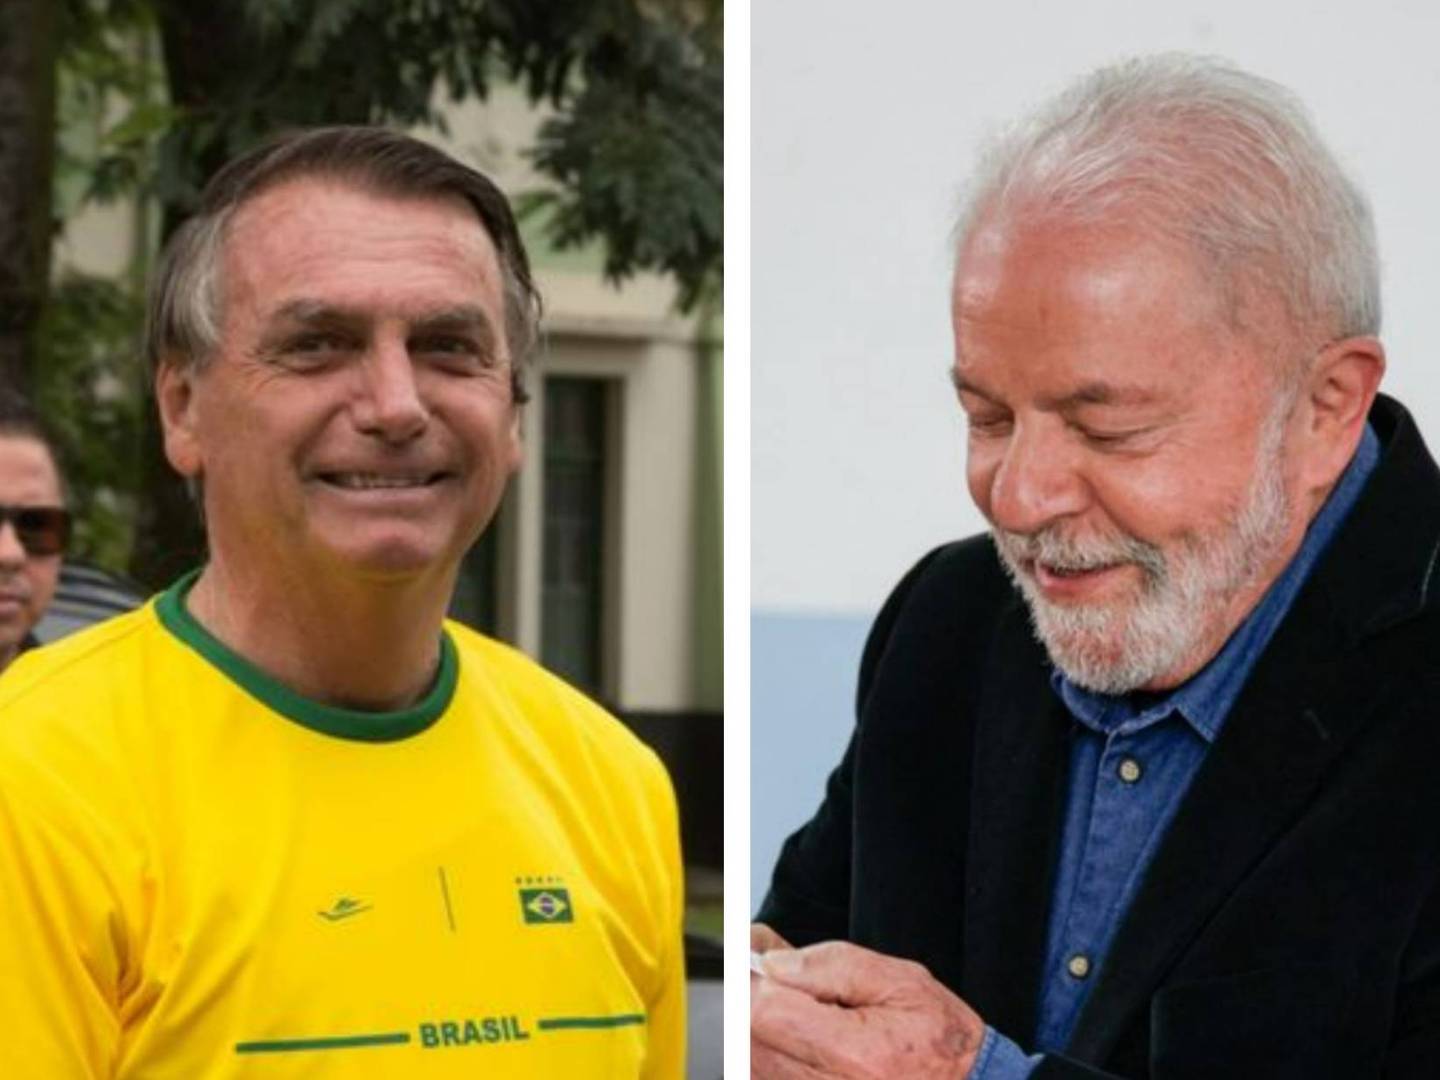 Los candidatos durante la jornada de votación de este domingo, uno en Río de Janeiro y el otro en San Pablo. Fotos: Bloomberg: Pedro Prado/Tuane Fernandes.